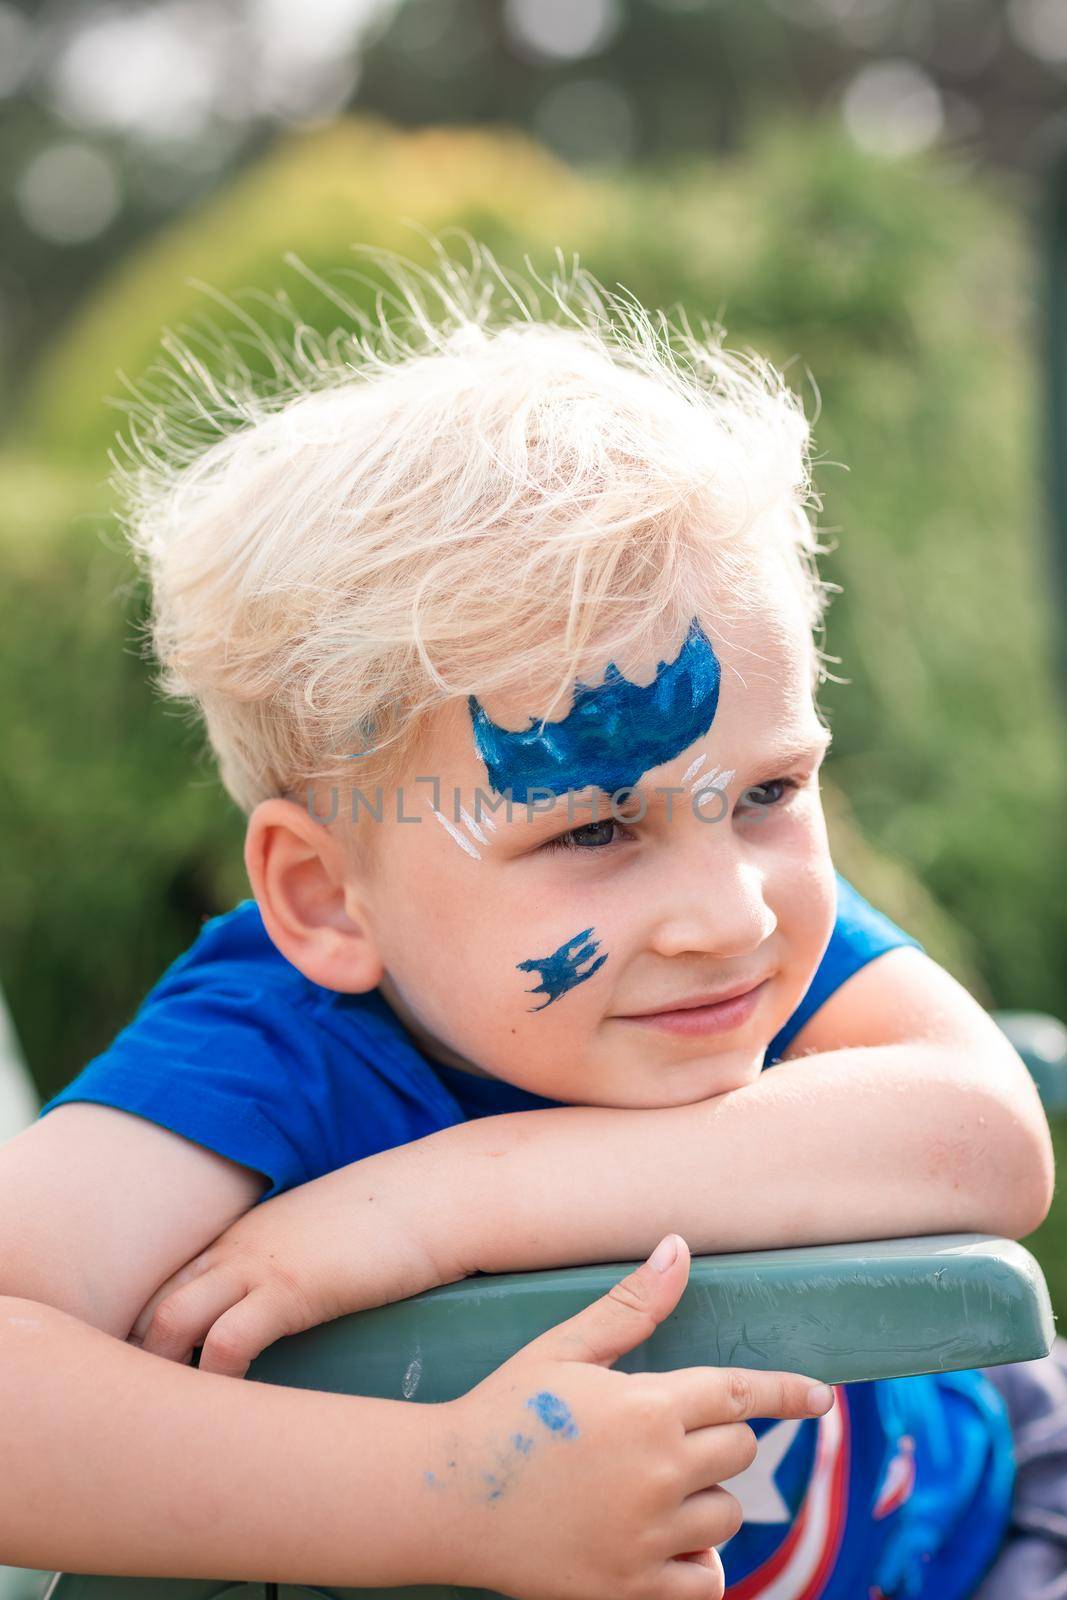 Cute little boy with face paint with batman pattern by Len44ik